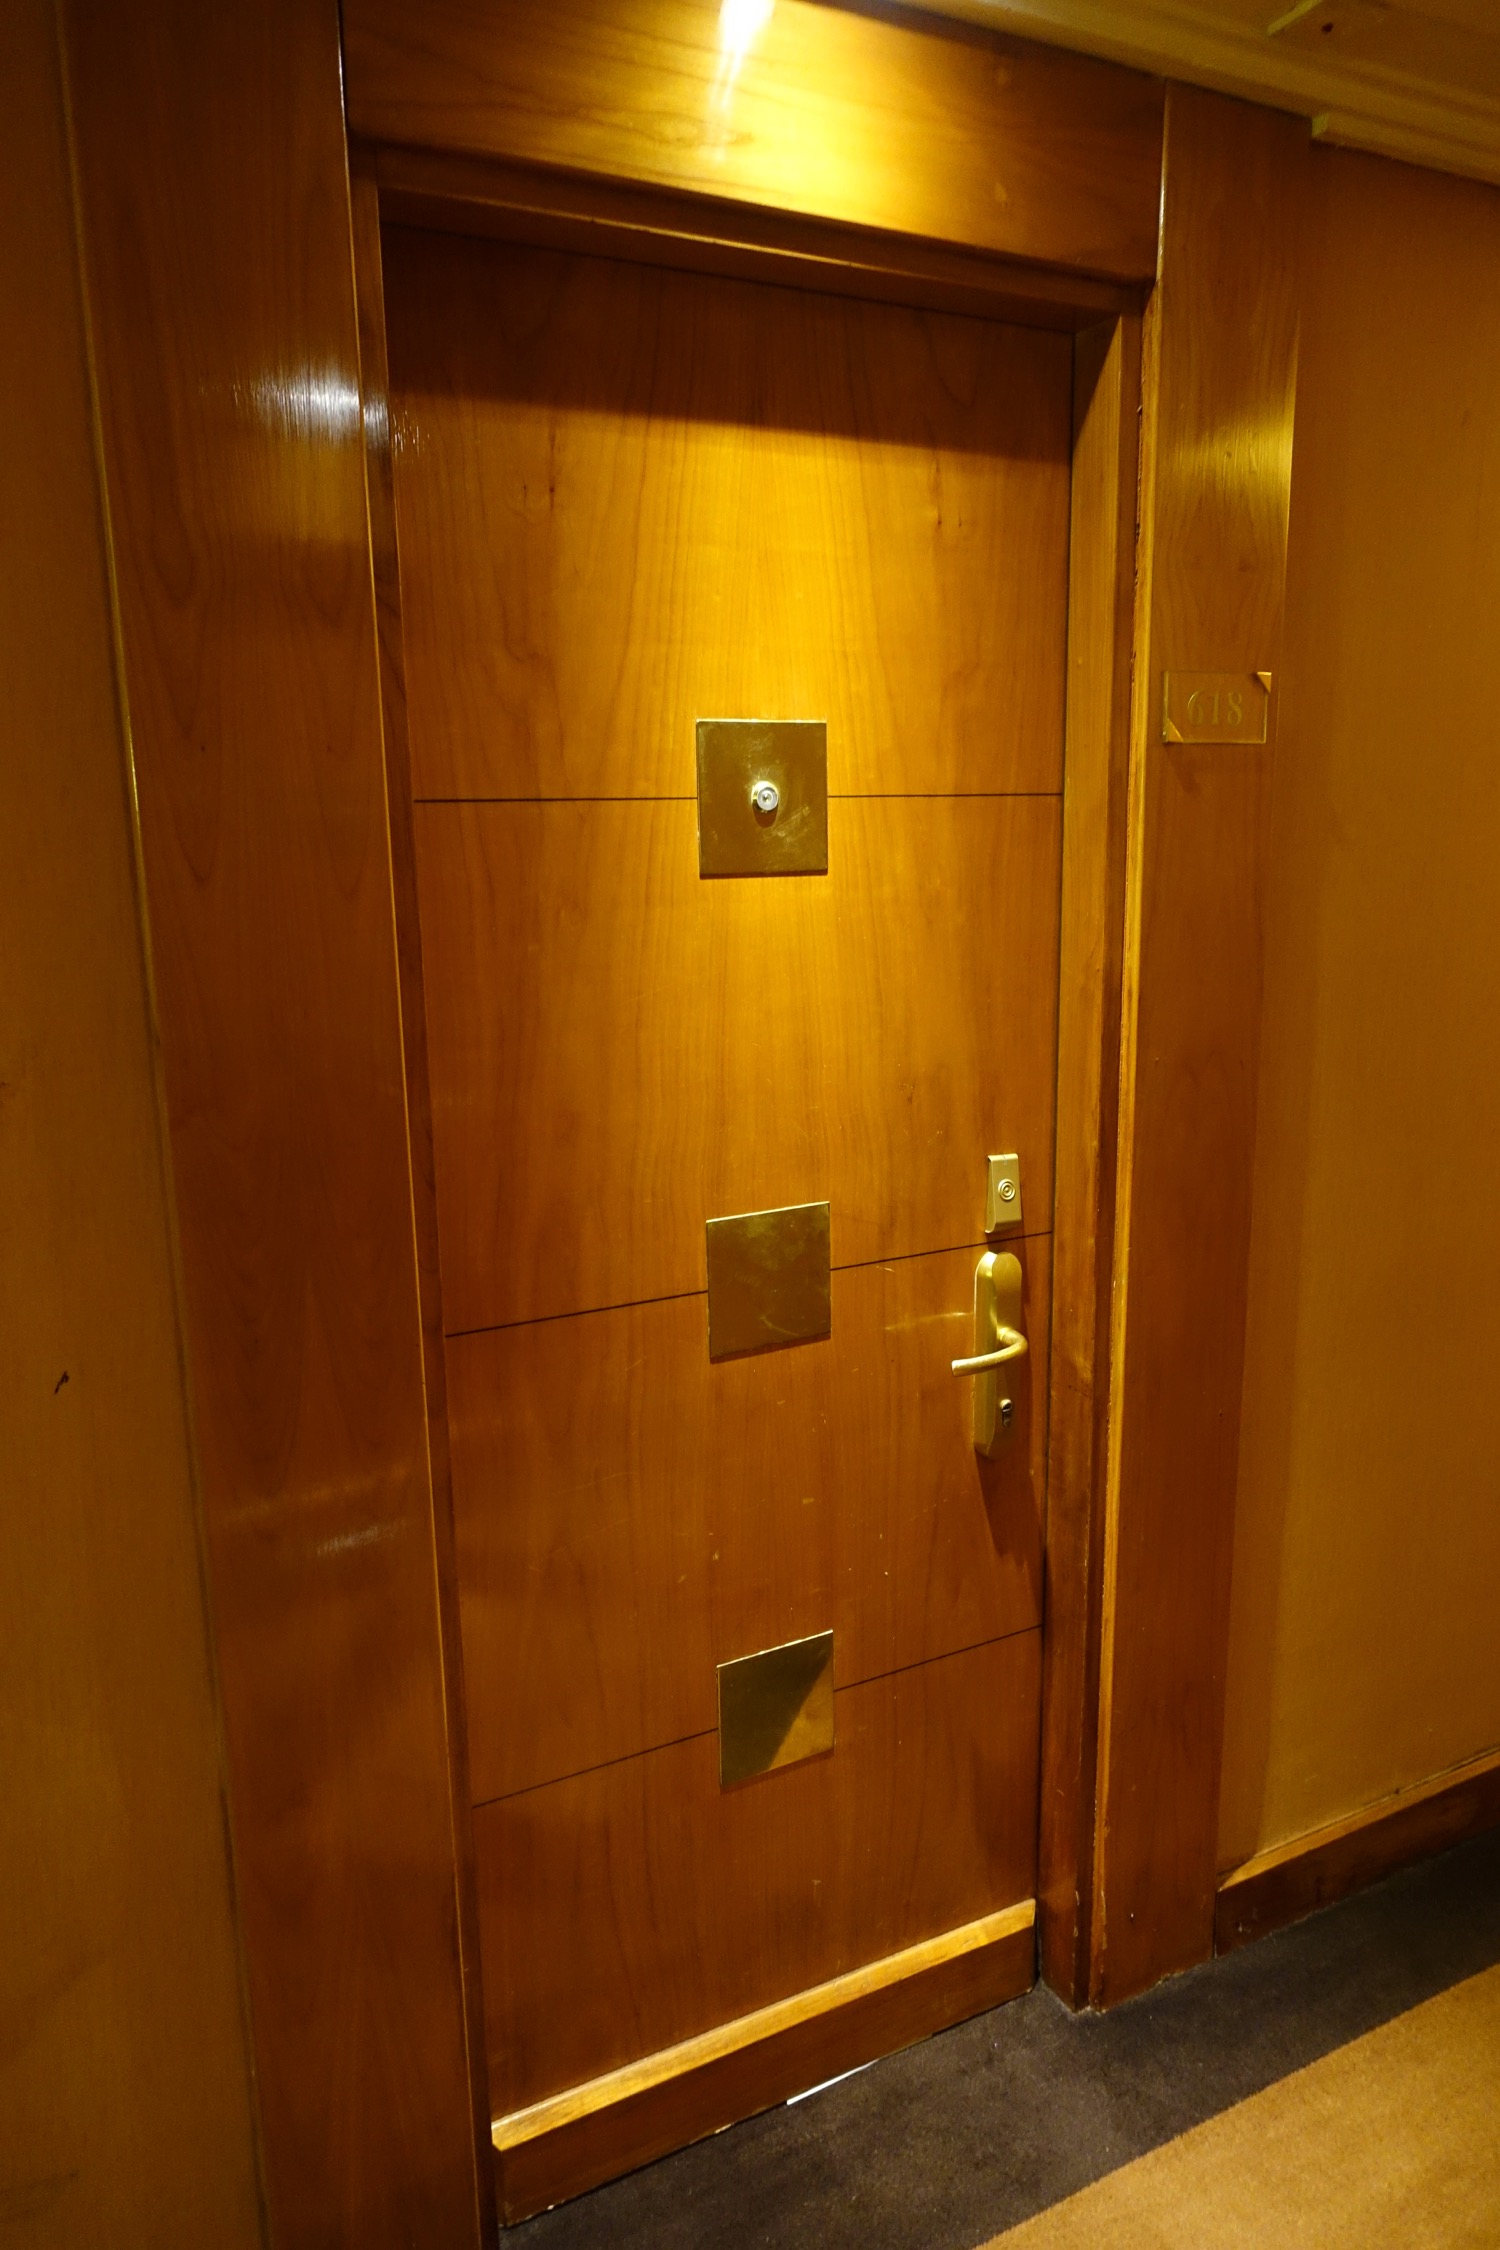 a wooden door with a handle and a door knob